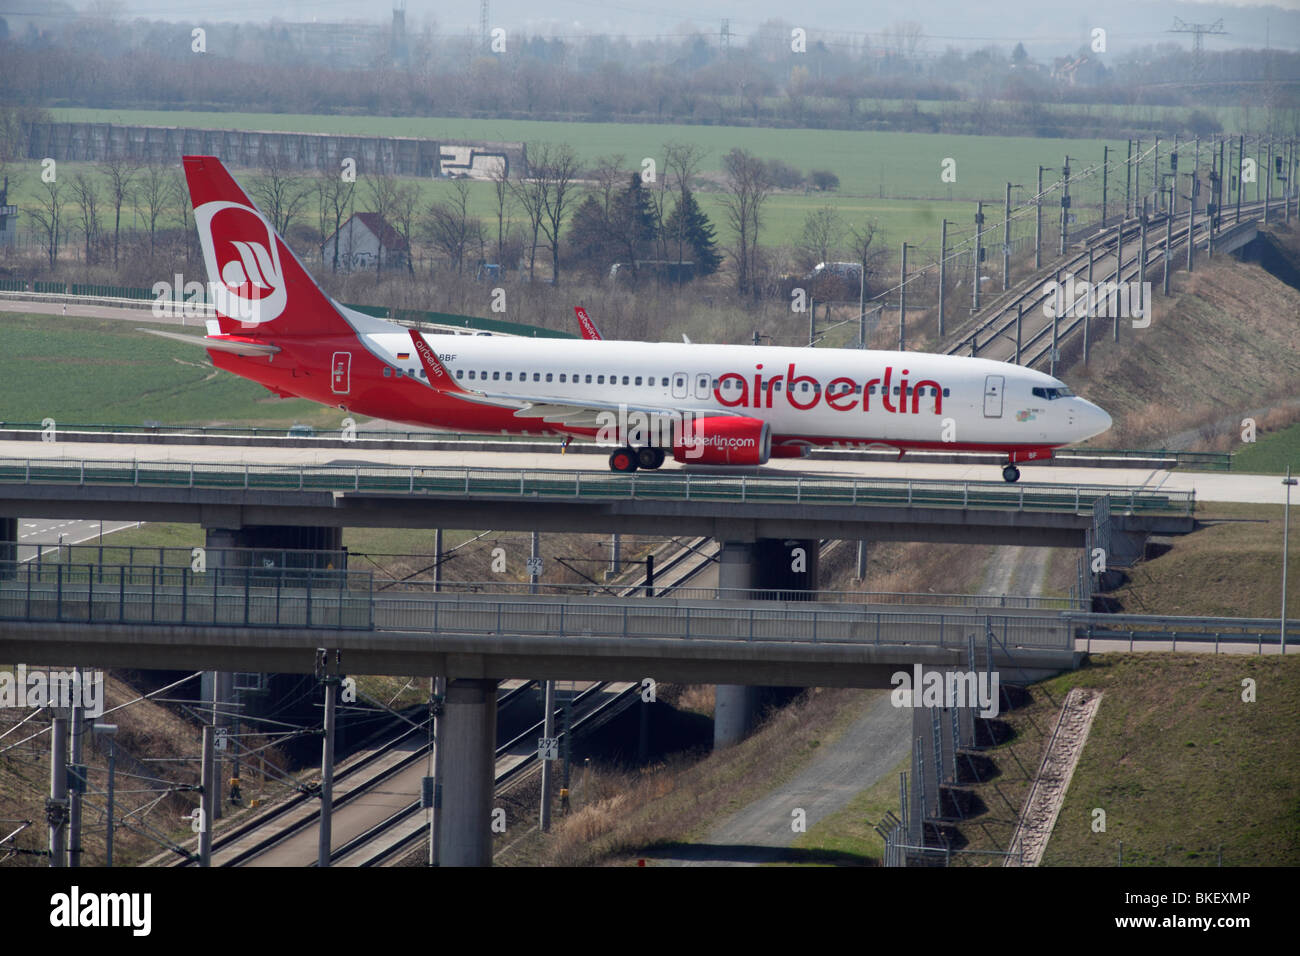 D'AVION Airberlin sur pont ferroviaire à l'aéroport de Leipzig-Halle Allemagne Banque D'Images